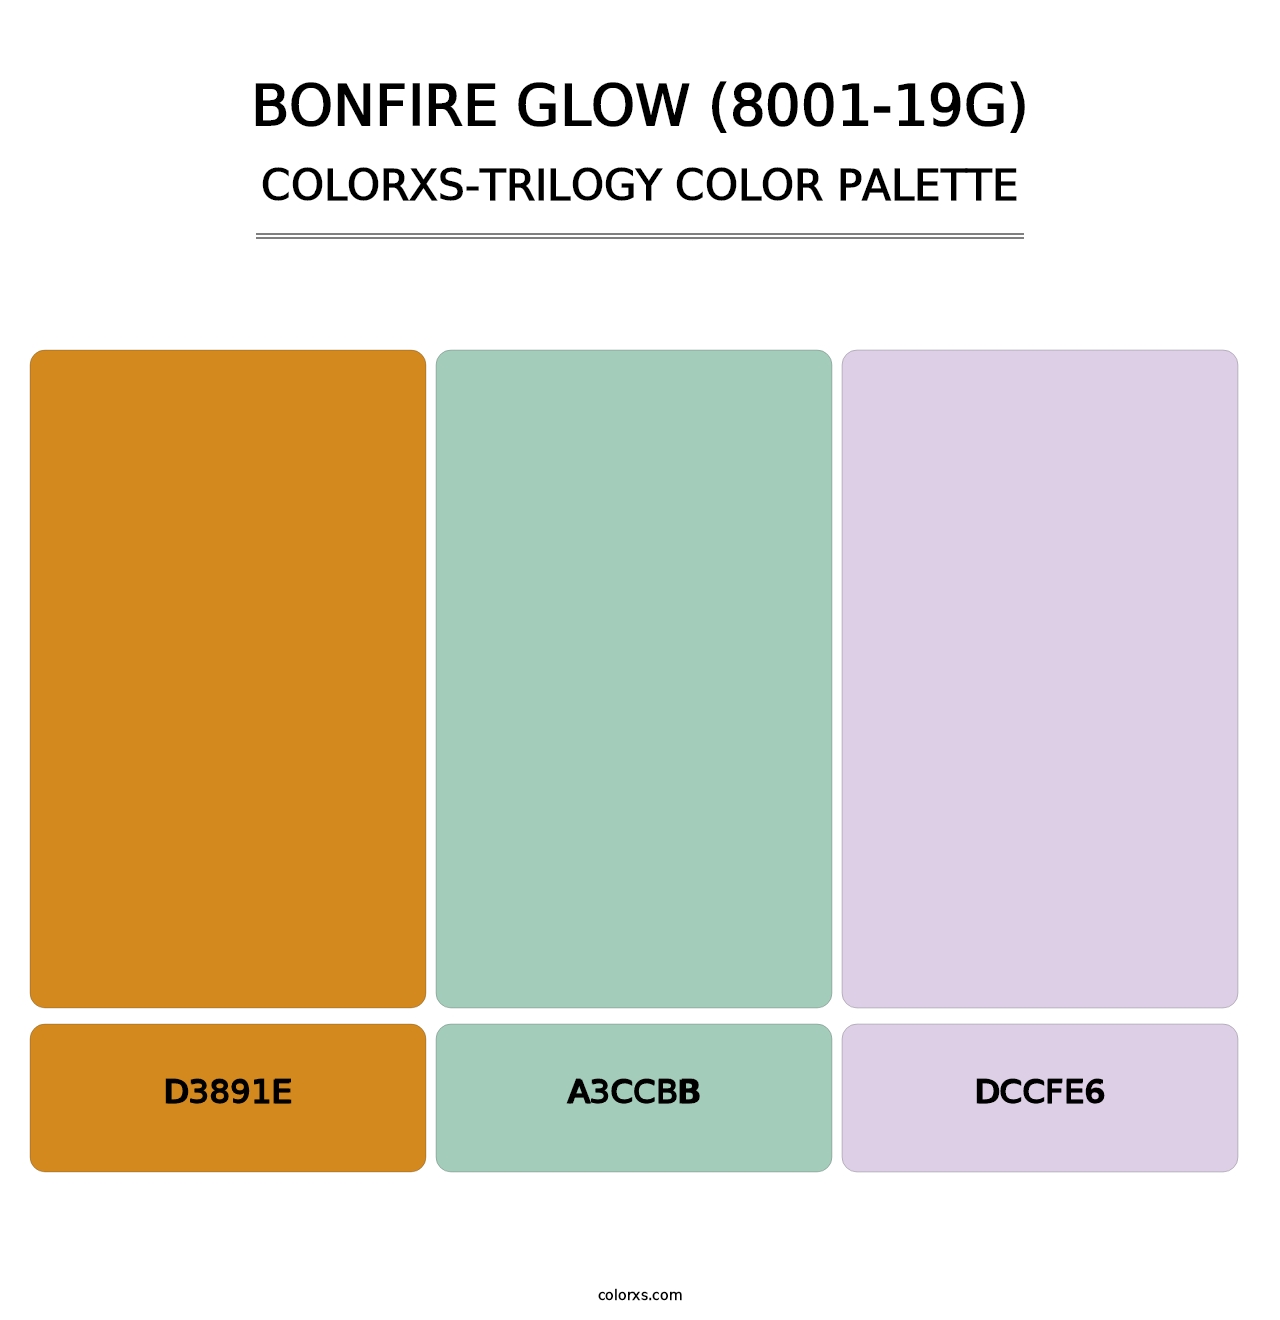 Bonfire Glow (8001-19G) - Colorxs Trilogy Palette